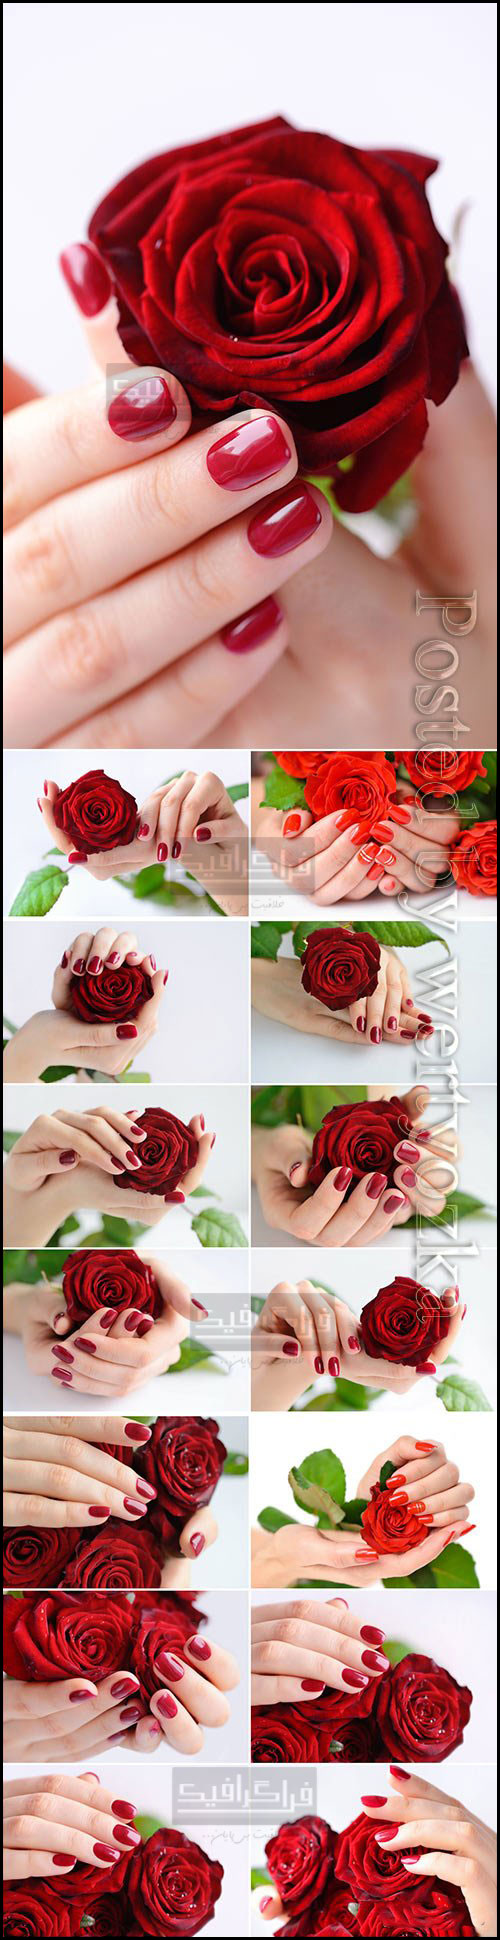 دانلود تصاویر استوک دست های زن با گل رز